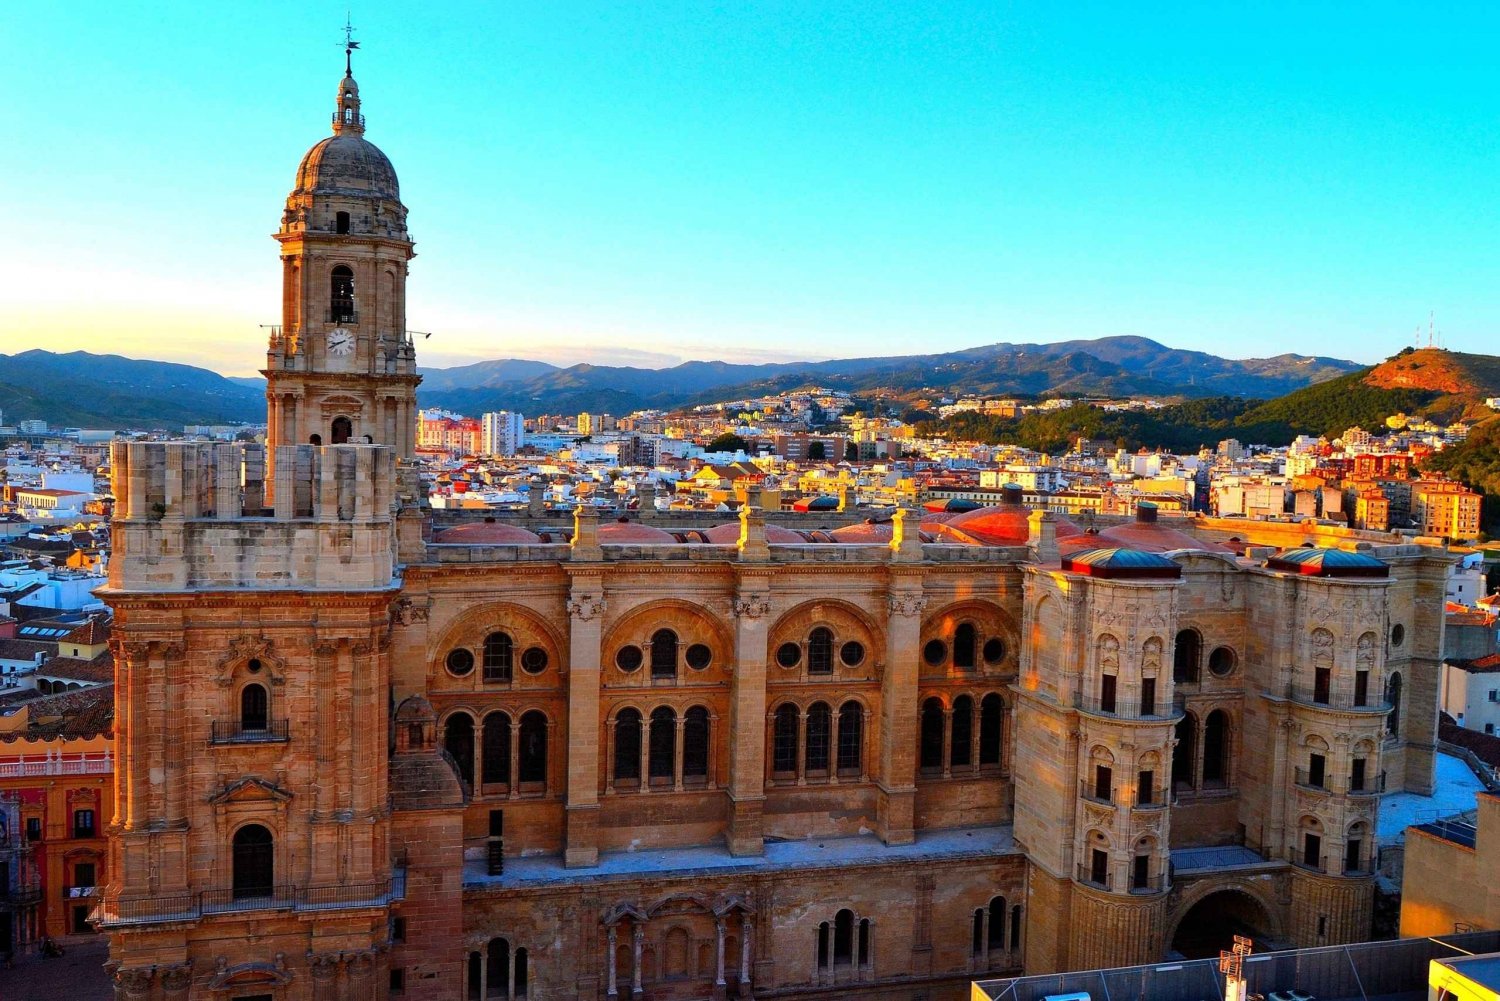 Malaga: Guidad rundvandring i centrum med katedralen